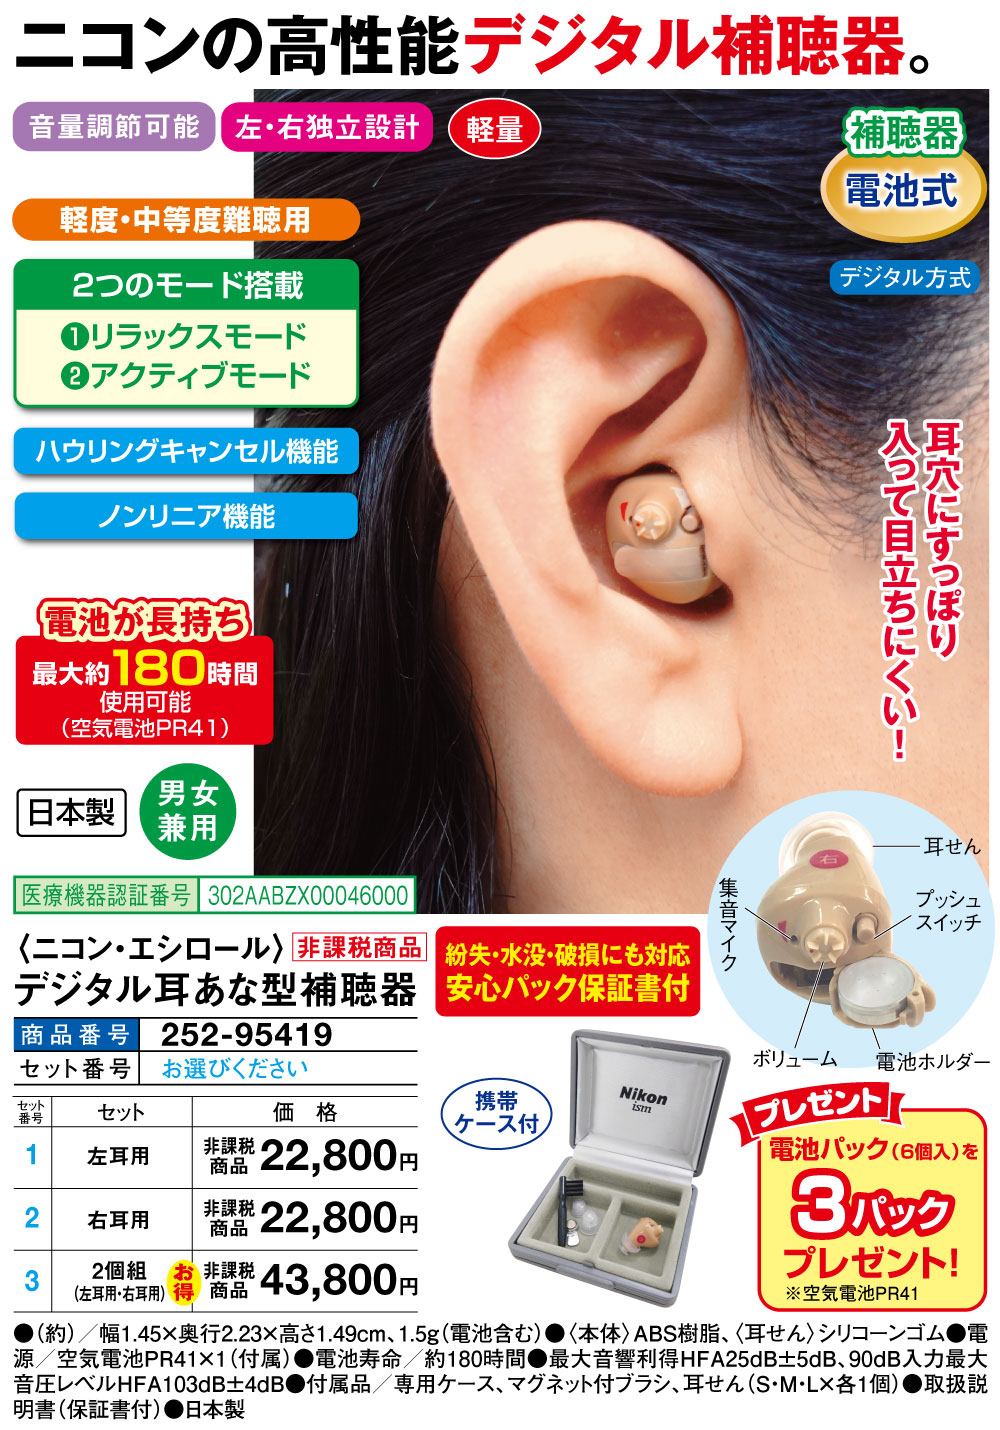 リオネット 耳穴 耳あな型補聴器 リオン HC-A1 トリマー式 デジタル補聴器 耳あな型 両耳分左右1組